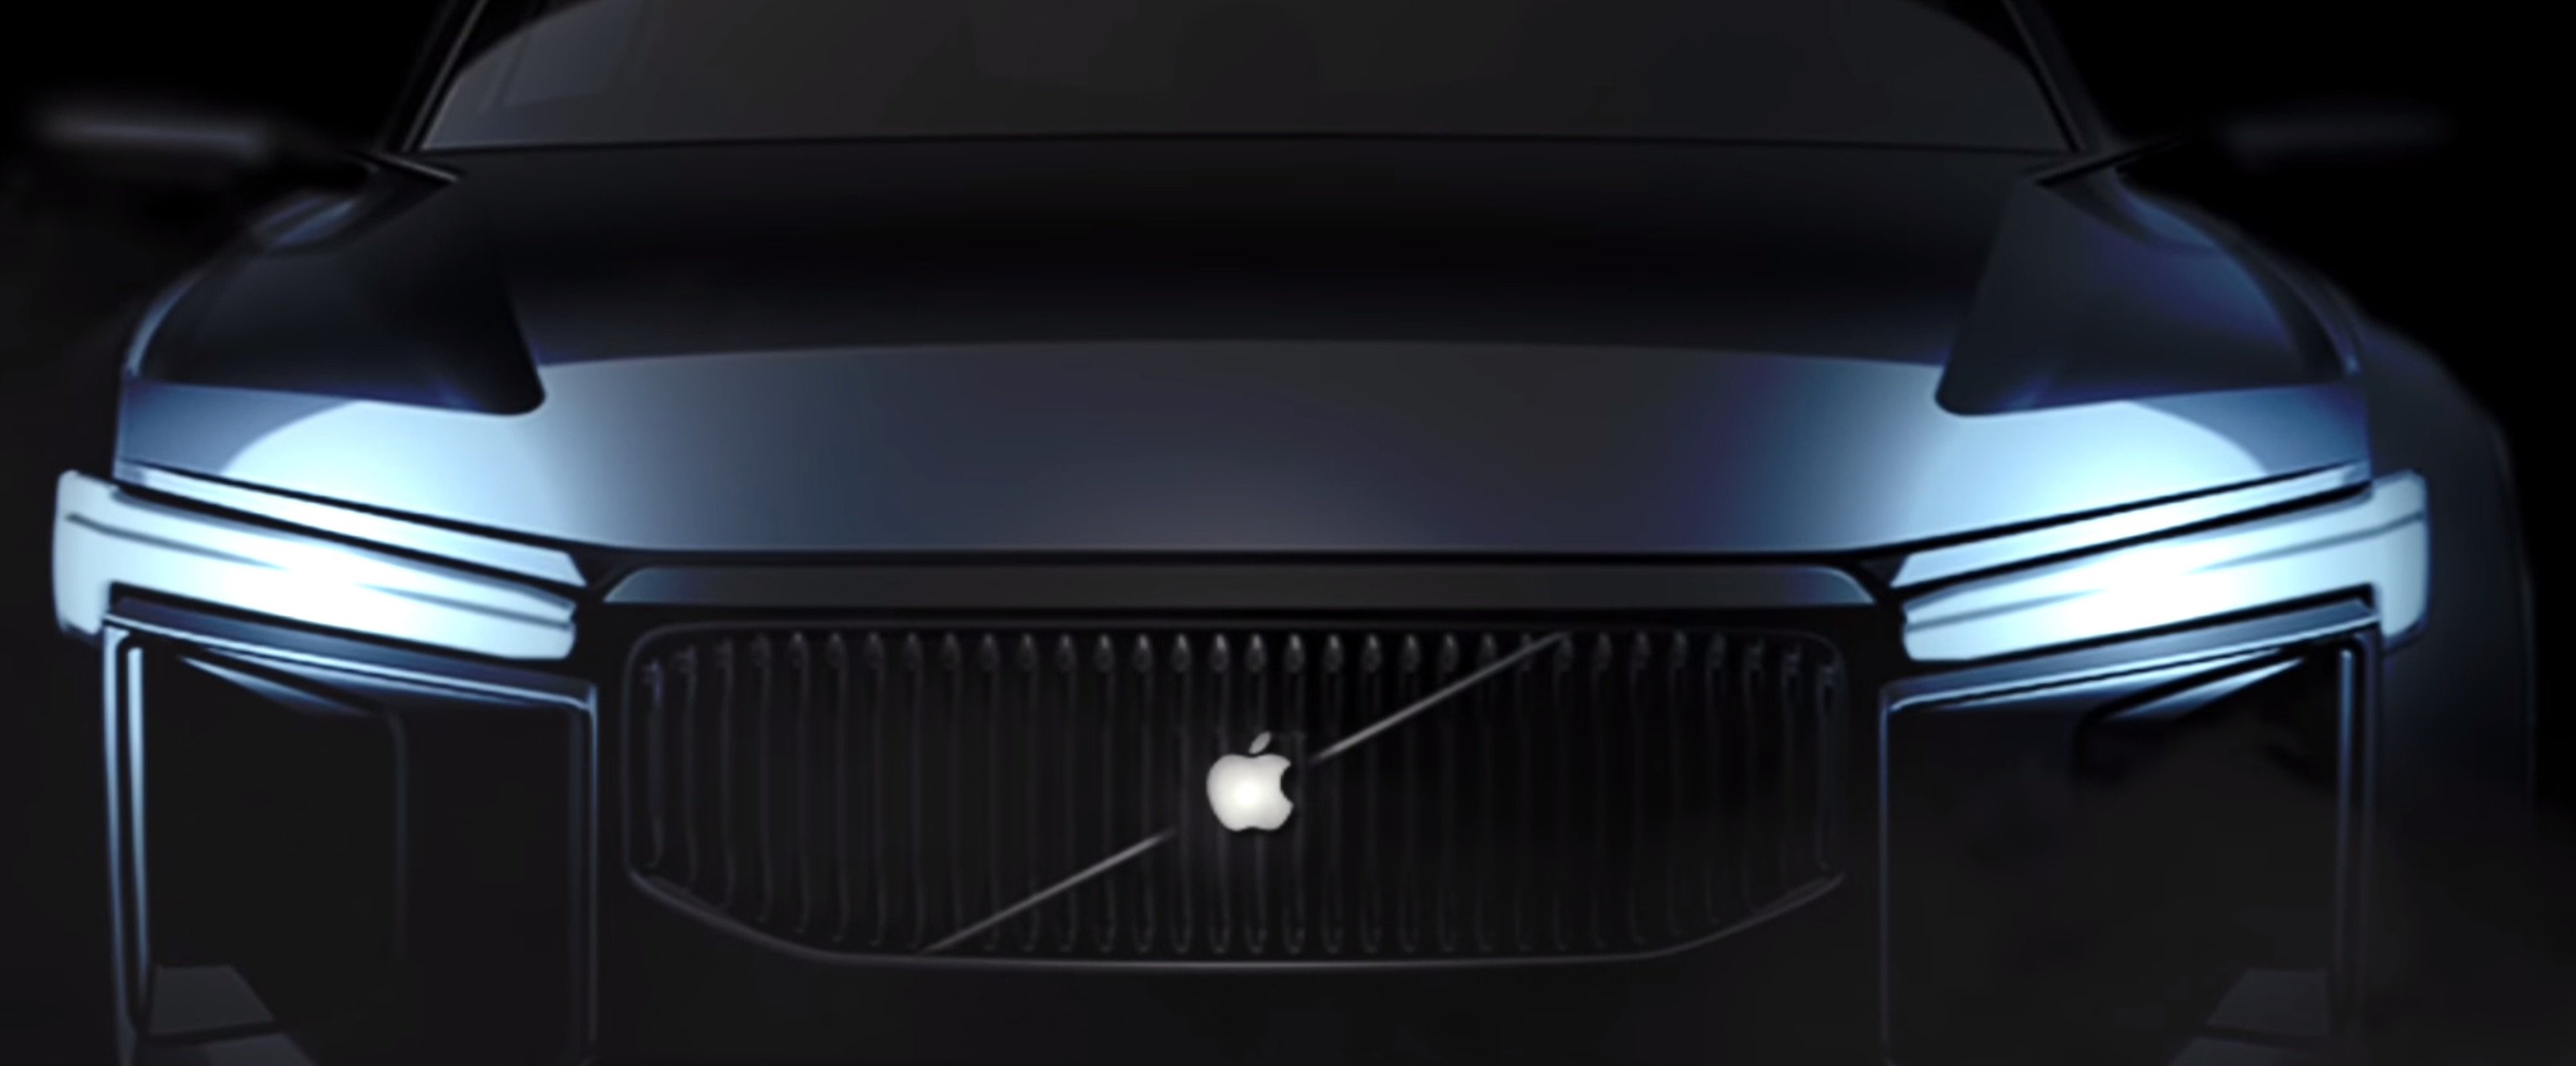 Apple Car - Mehr als nur ein Auto 2020 Concept-Video 1